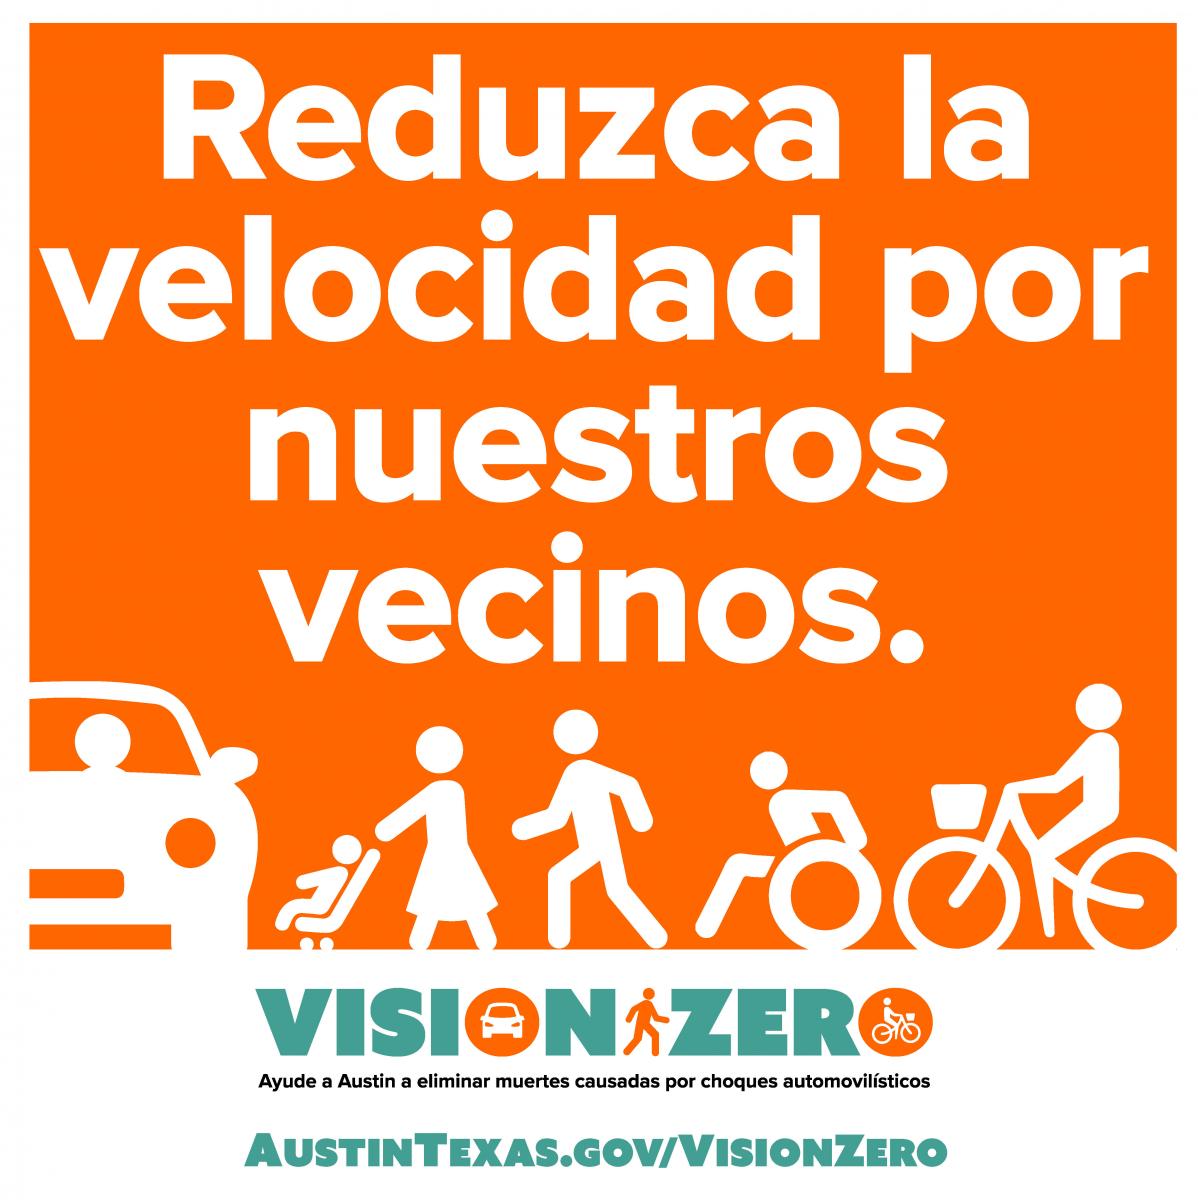 Reduzca la velocidad por nuestros vecinos. Vision Zero. Ayude a Austin a eliminar muertes causadas por choques automovilisticos. AustinTexas.gov/VisionZero.